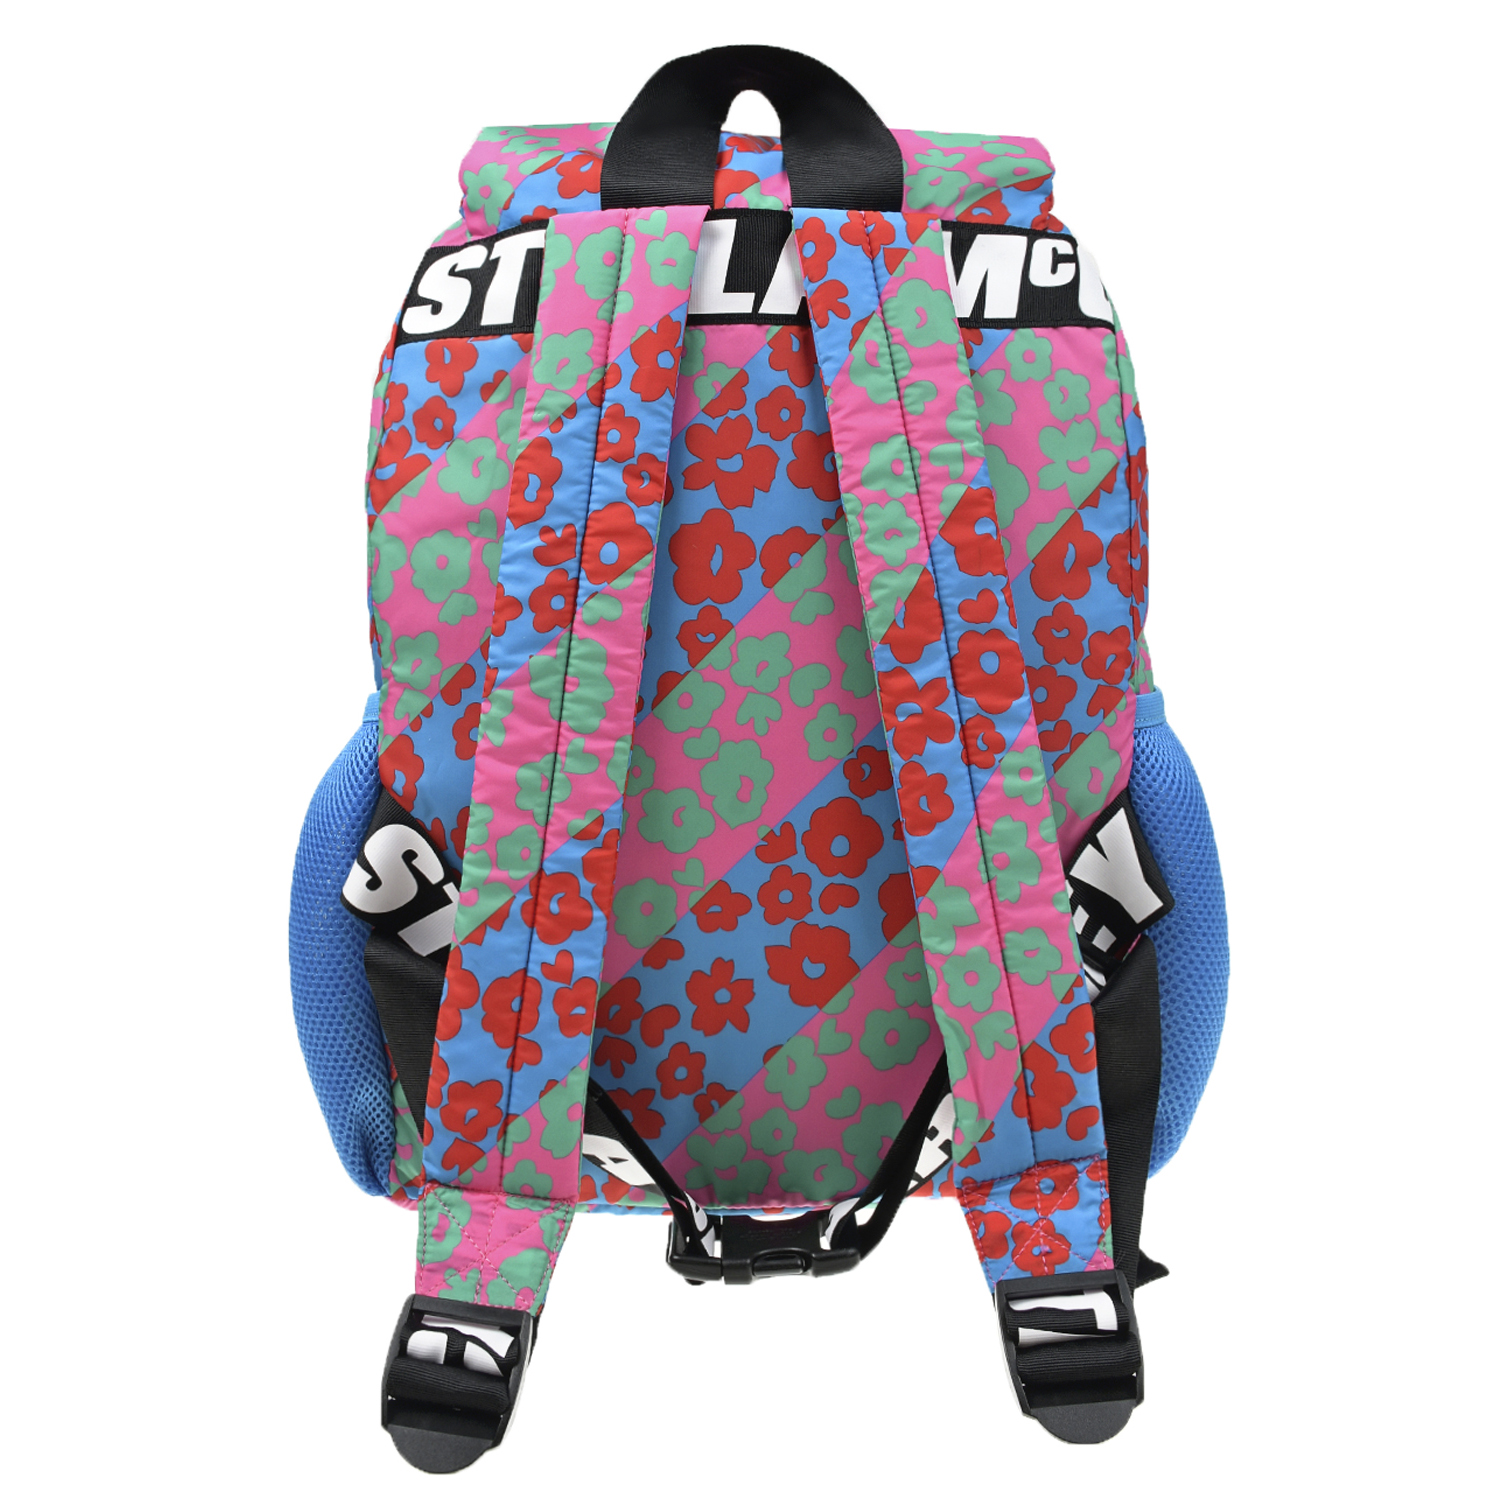 Рюкзак с цветочным принтом, 45x20x10 см Stella McCartney детский, размер unica - фото 3